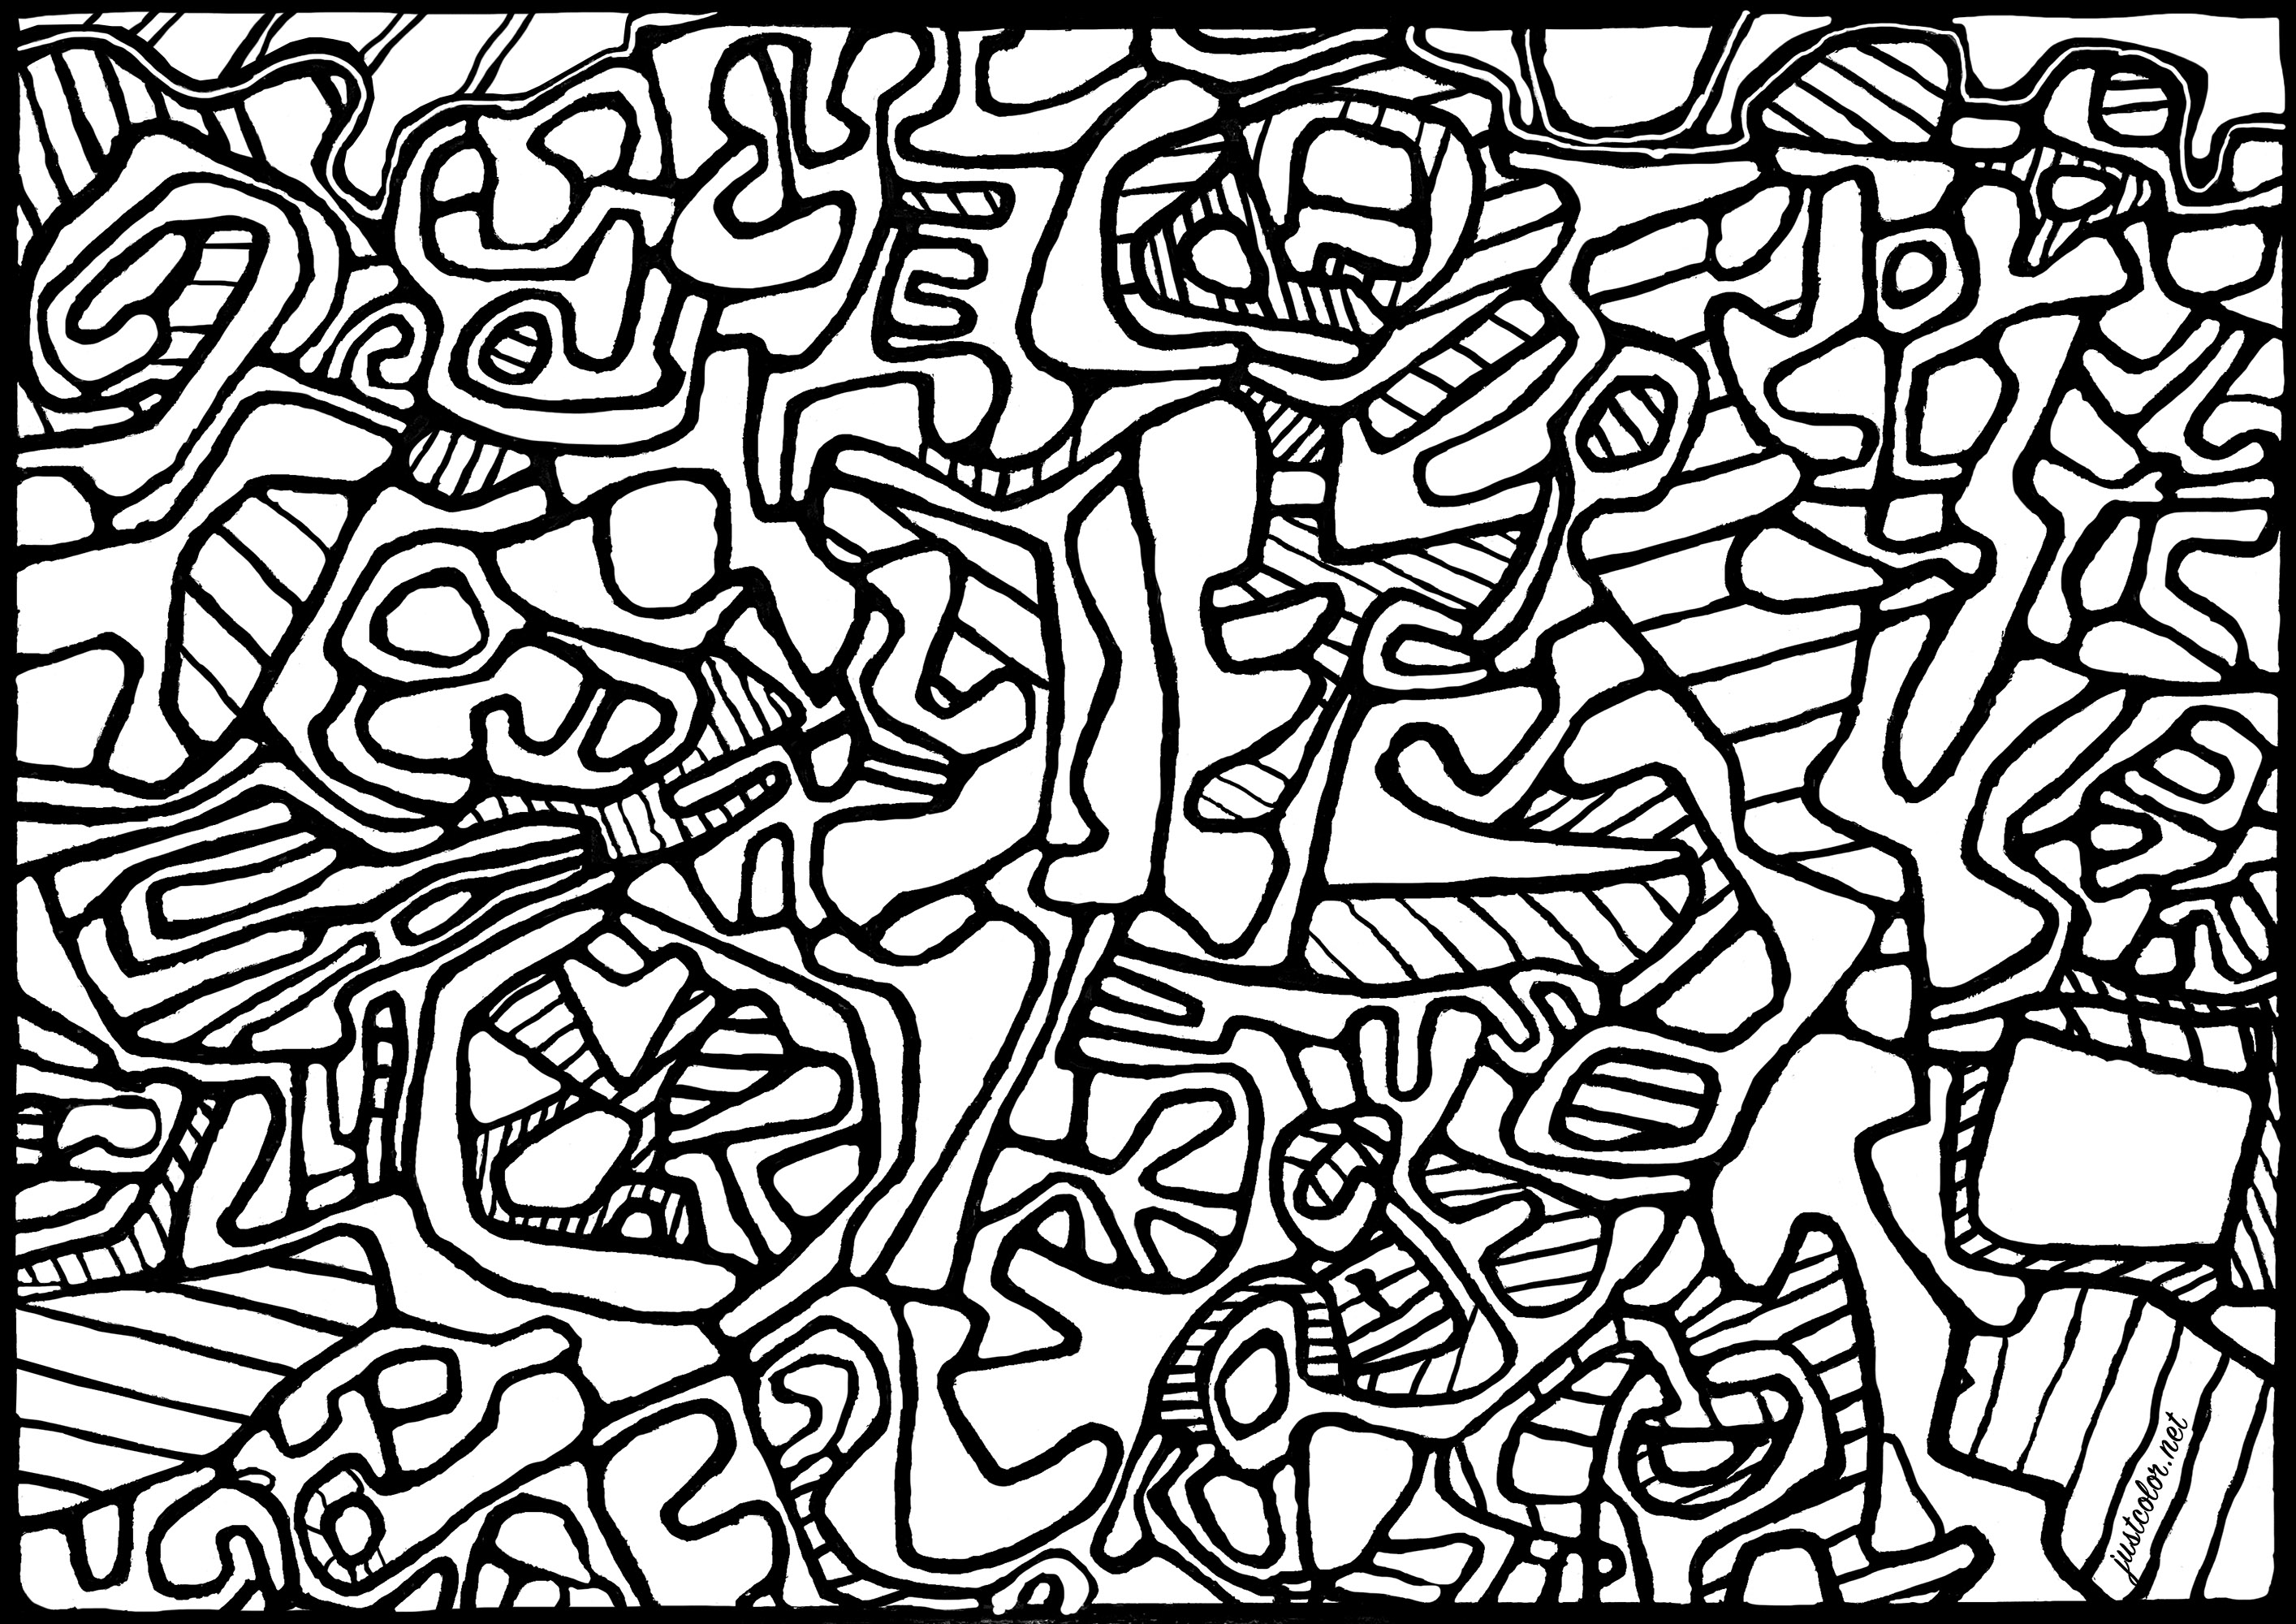 Coloriage créé à partir du tableau 'Jardin L'Hourloupe' de Jean Dubuffet (1966). Jean Dubuffet a commencé sa carrière en peignant des paysages et des portraits. Intéressé par l'expression libre et instinctive de l'artiste non formé, il a fondé le mouvement Art Brut et a créé de nombreuses œuvres dans cette esthétique, utilisant des matériaux comme le béton et la terre. Il a également développé le concept de 'l'Hourloupe', un univers fantastique peuplé de personnages étranges et grotesques. Dubuffet était également un collectionneur passionné d'art brut et a créé une collection importante qui a été exposée dans le monde entier.